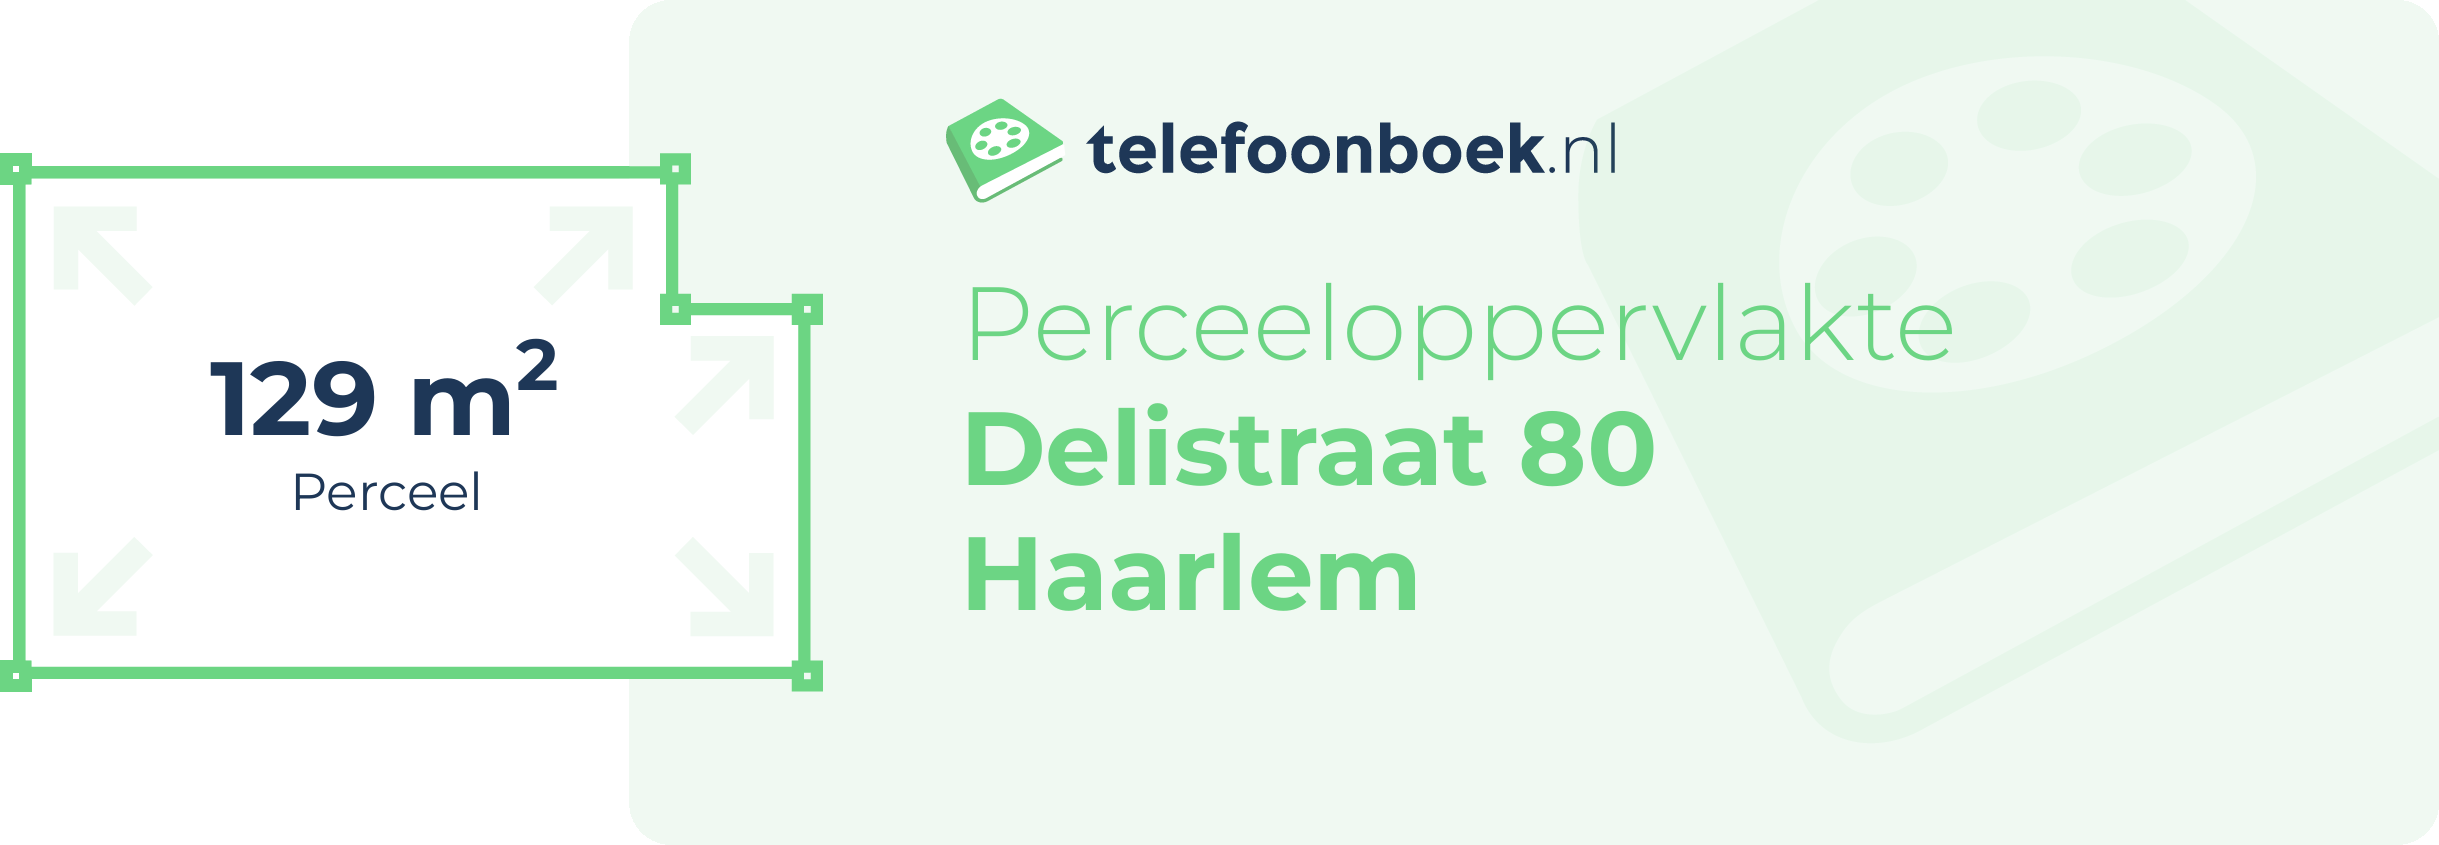 Perceeloppervlakte Delistraat 80 Haarlem